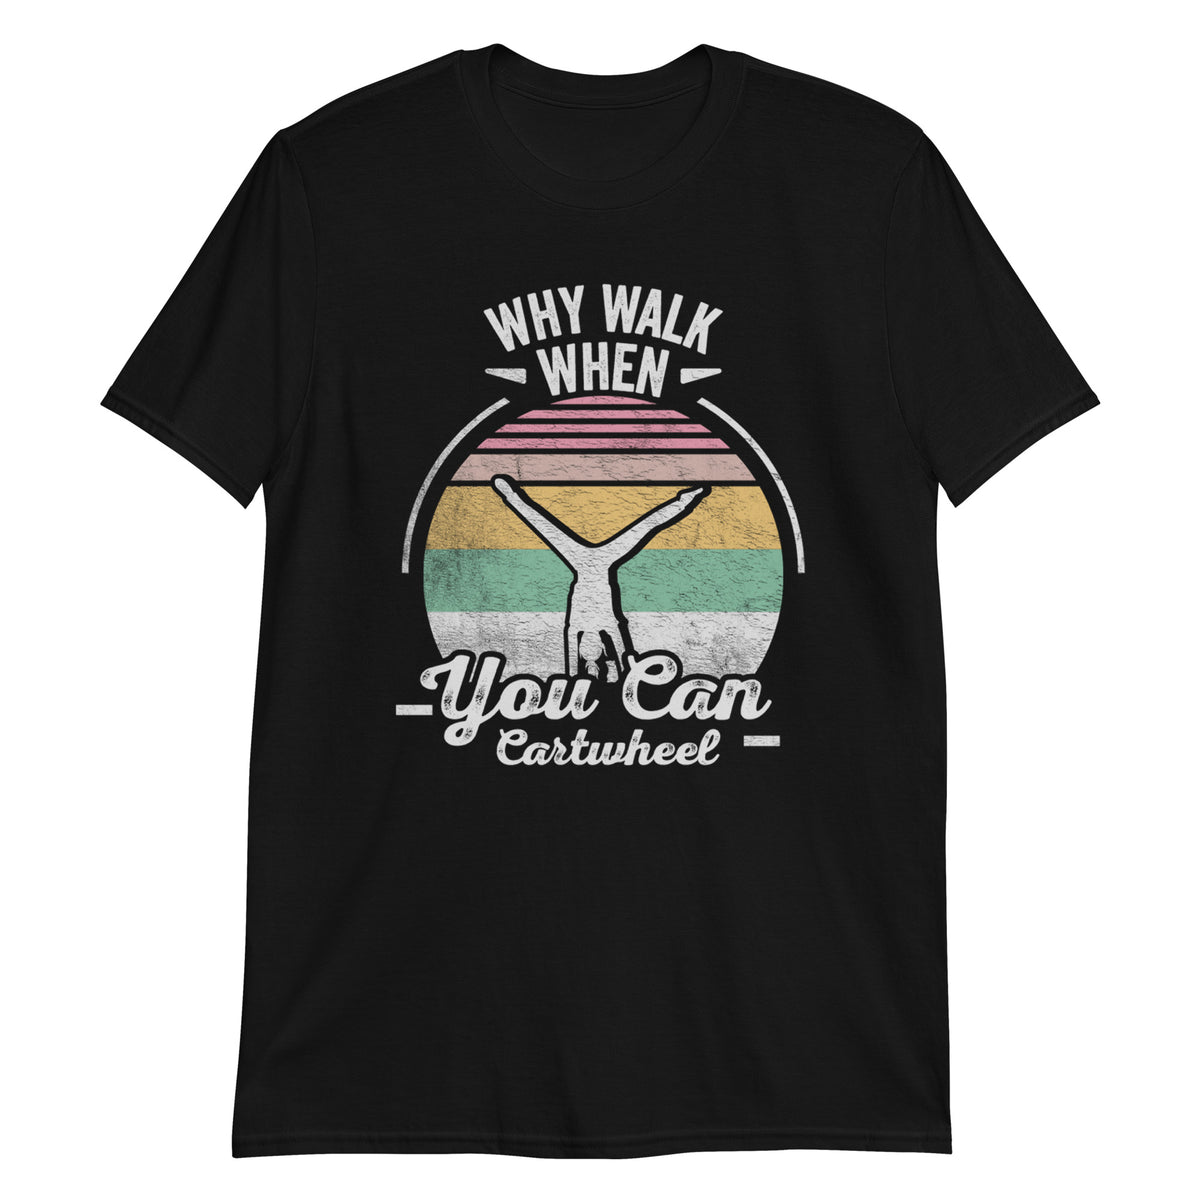 Why Walk When You Can Cartwheel T-Shirt